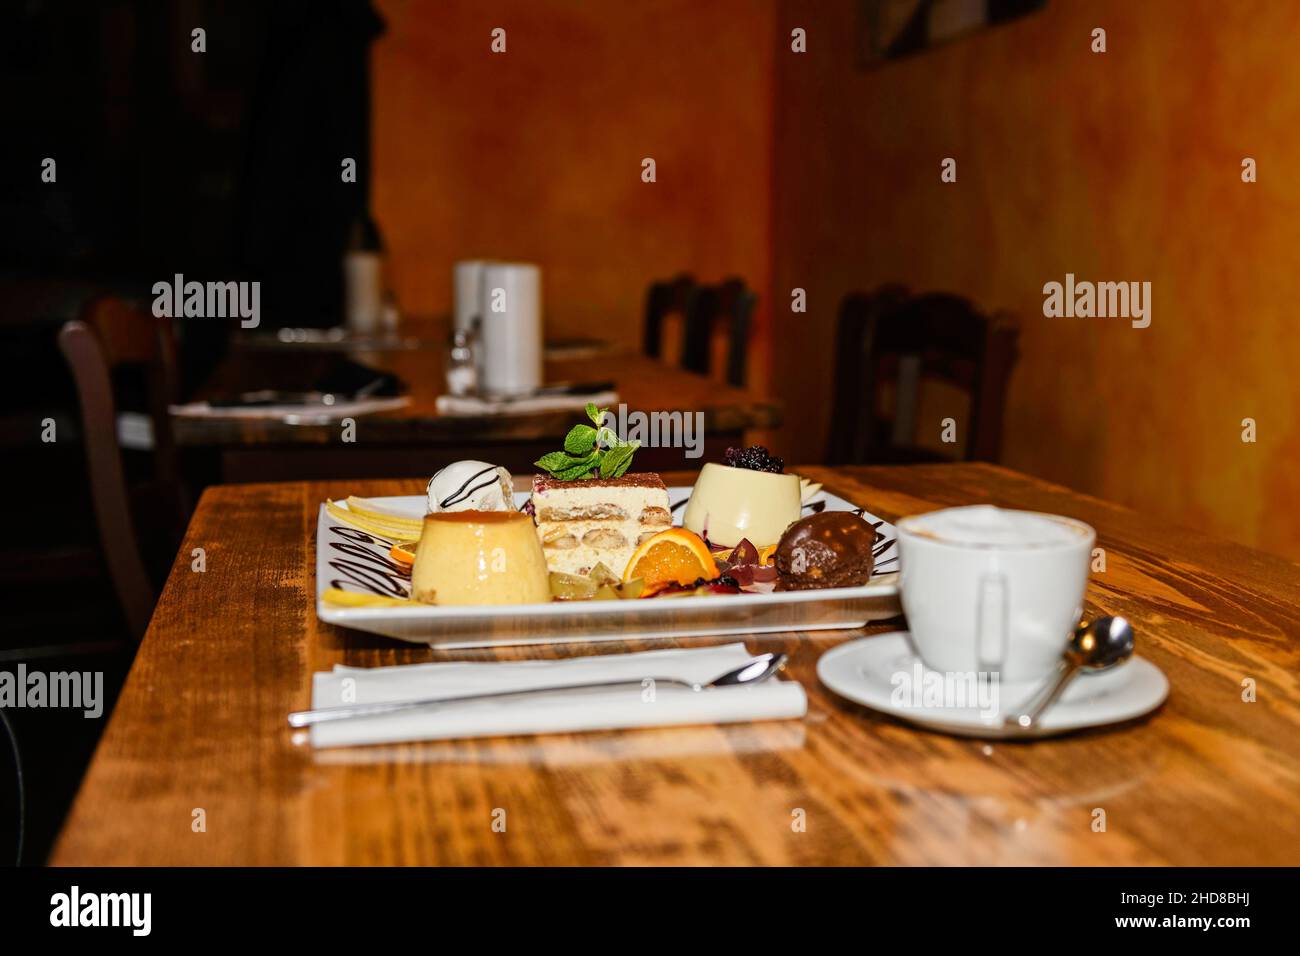 Une sélection de desserts différents, tels que tiramisu et panna cotta, joliment agencés sur une table en bois. Banque D'Images